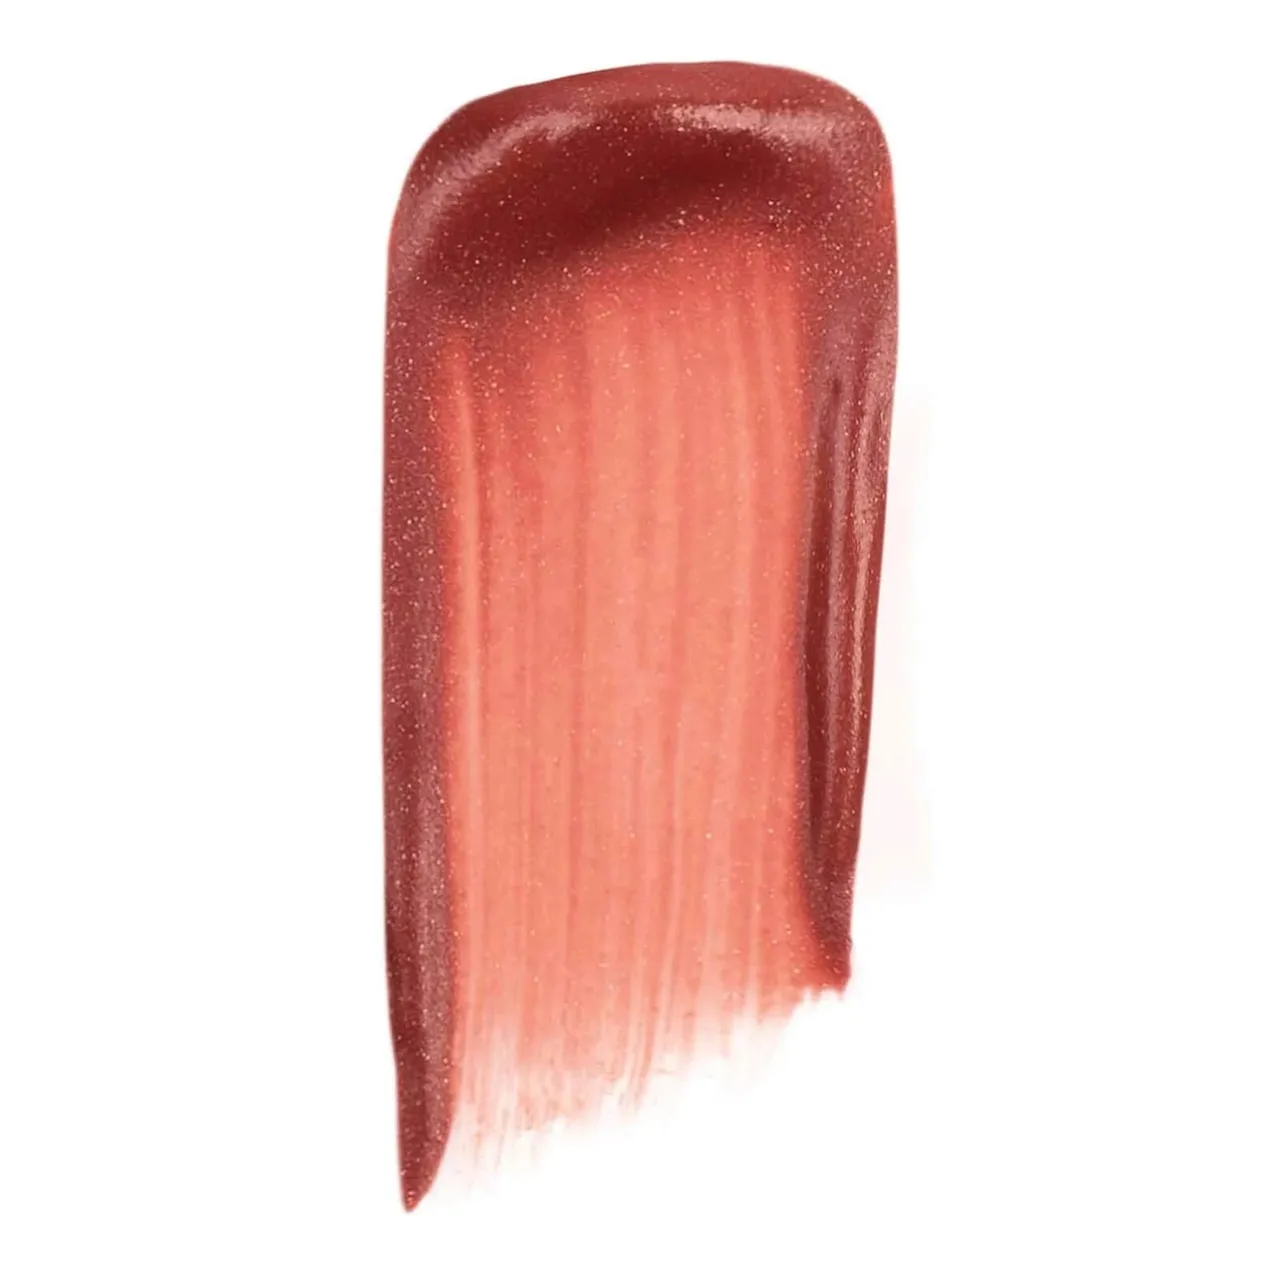 Daniel Sandler Watercolour Gel Cheek Colour 10ml (Various Shades) - Berry